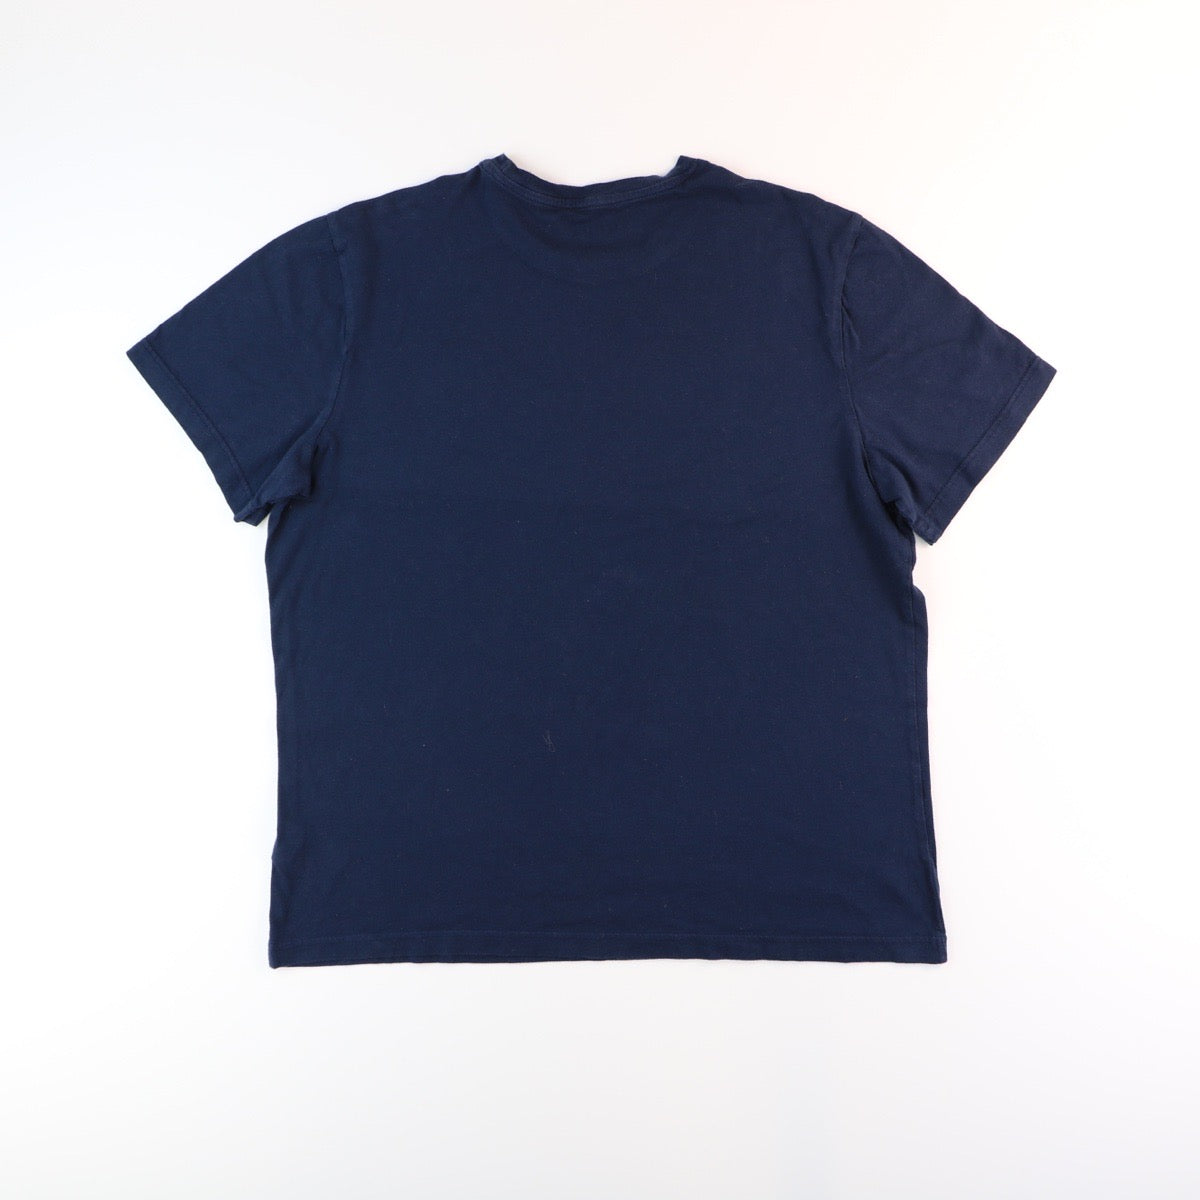 Reebok T-shirt (XL)